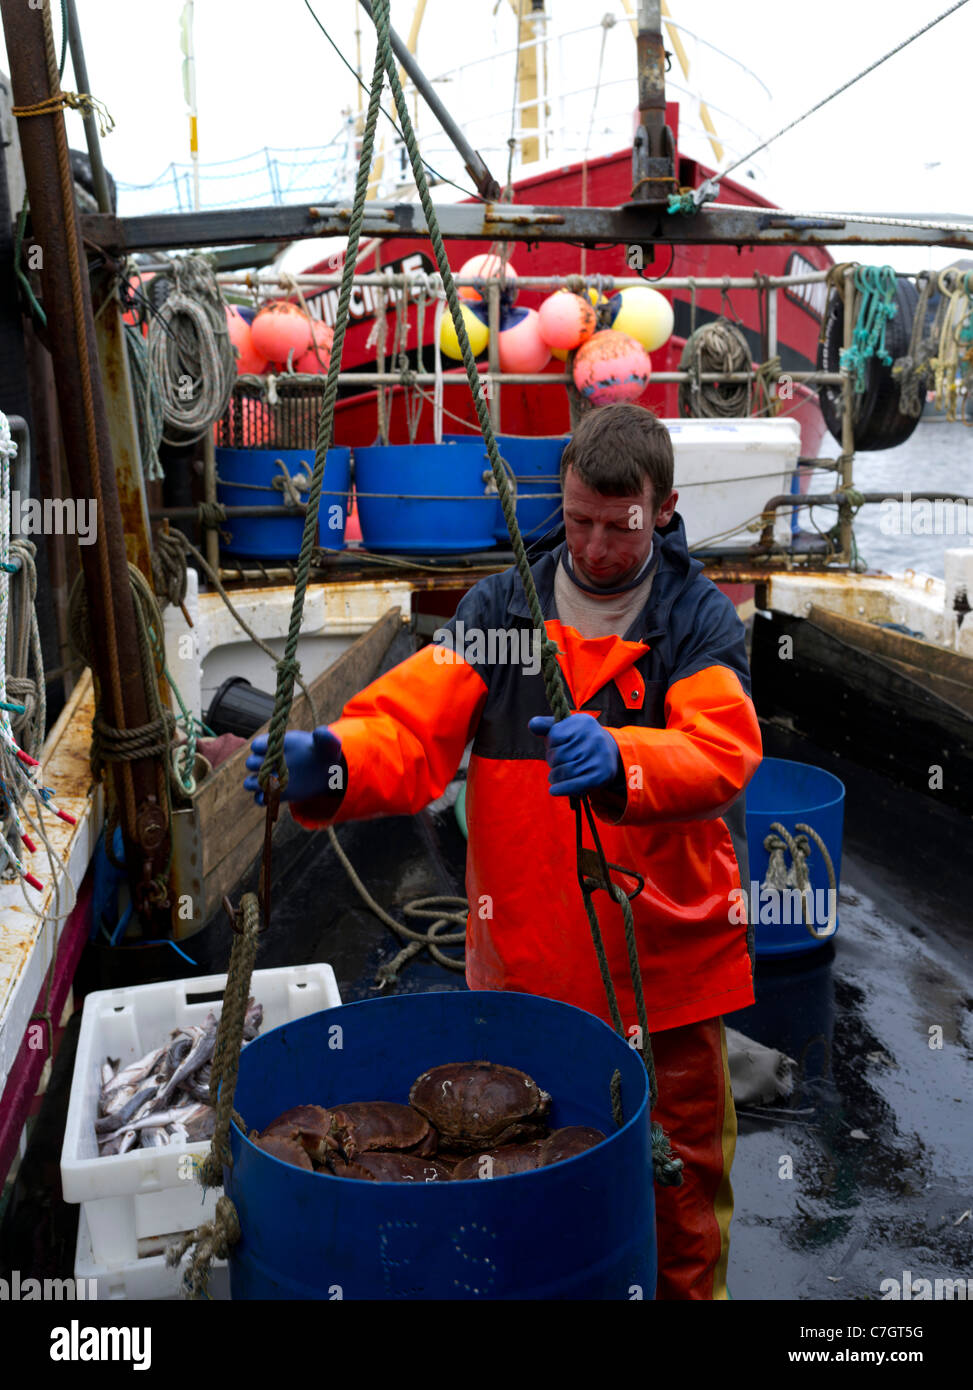 dh bateau de pêche au quai DE PÊCHE ORKNEY seau de crabe prêt à être levé à terre pêche britannique industrie de capture de poisson Banque D'Images